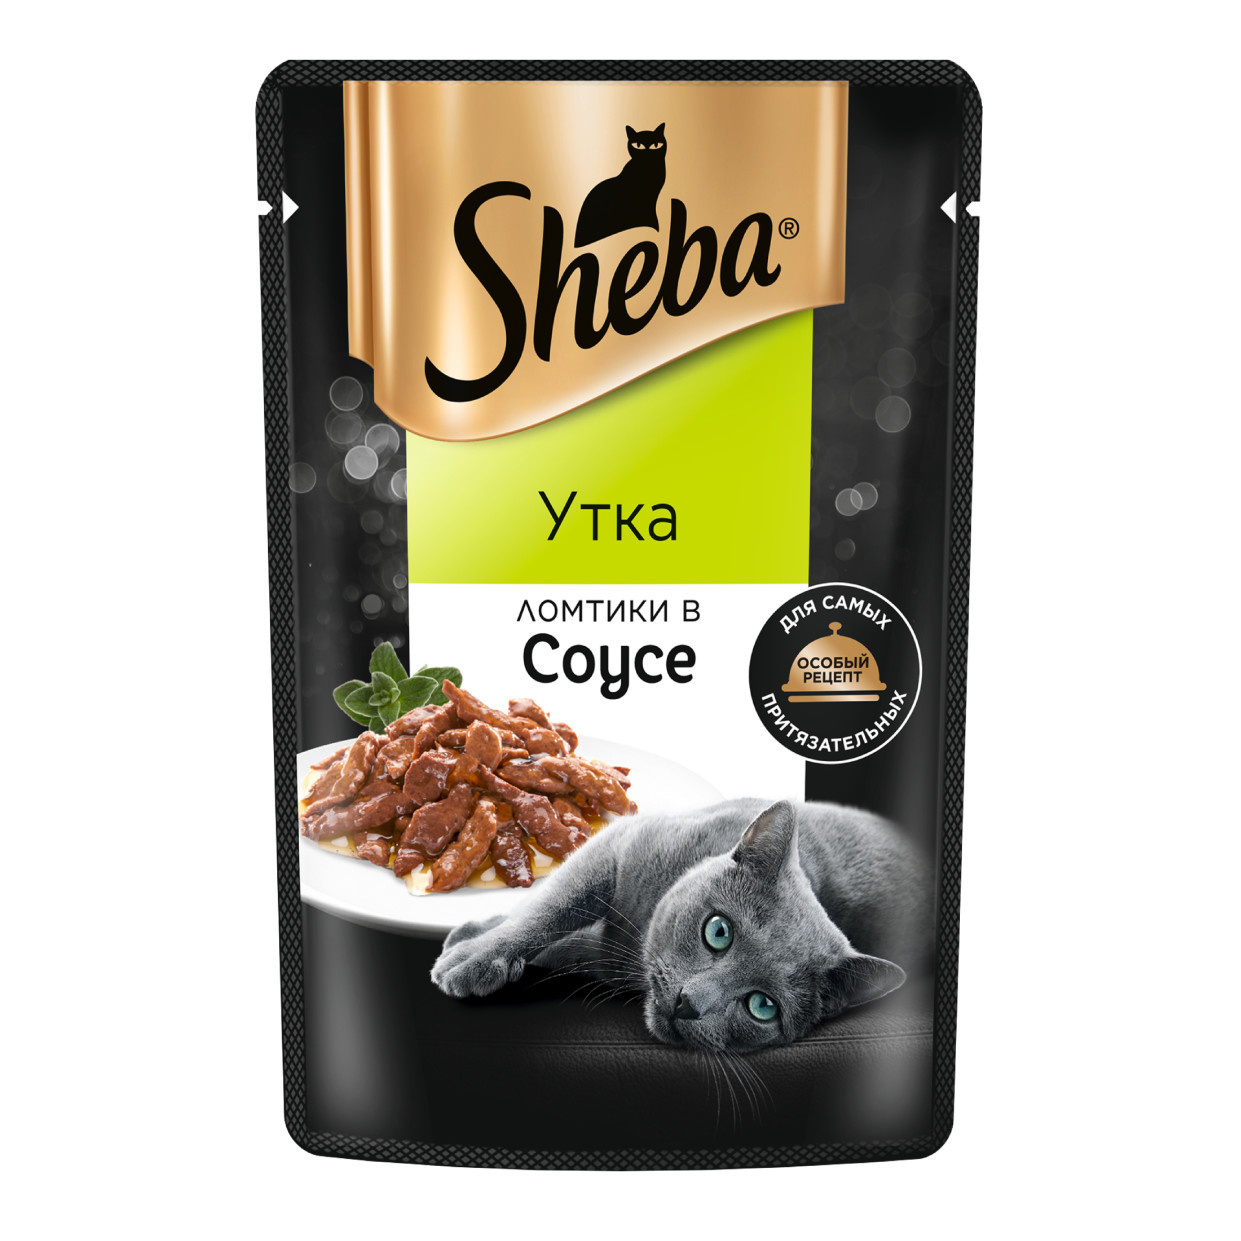 Sheba Sheba влажный корм для кошек «Ломтики в соусе с уткой» (75 г) корм для кошек sheba форель и креветки ломтики в соусе 75 г